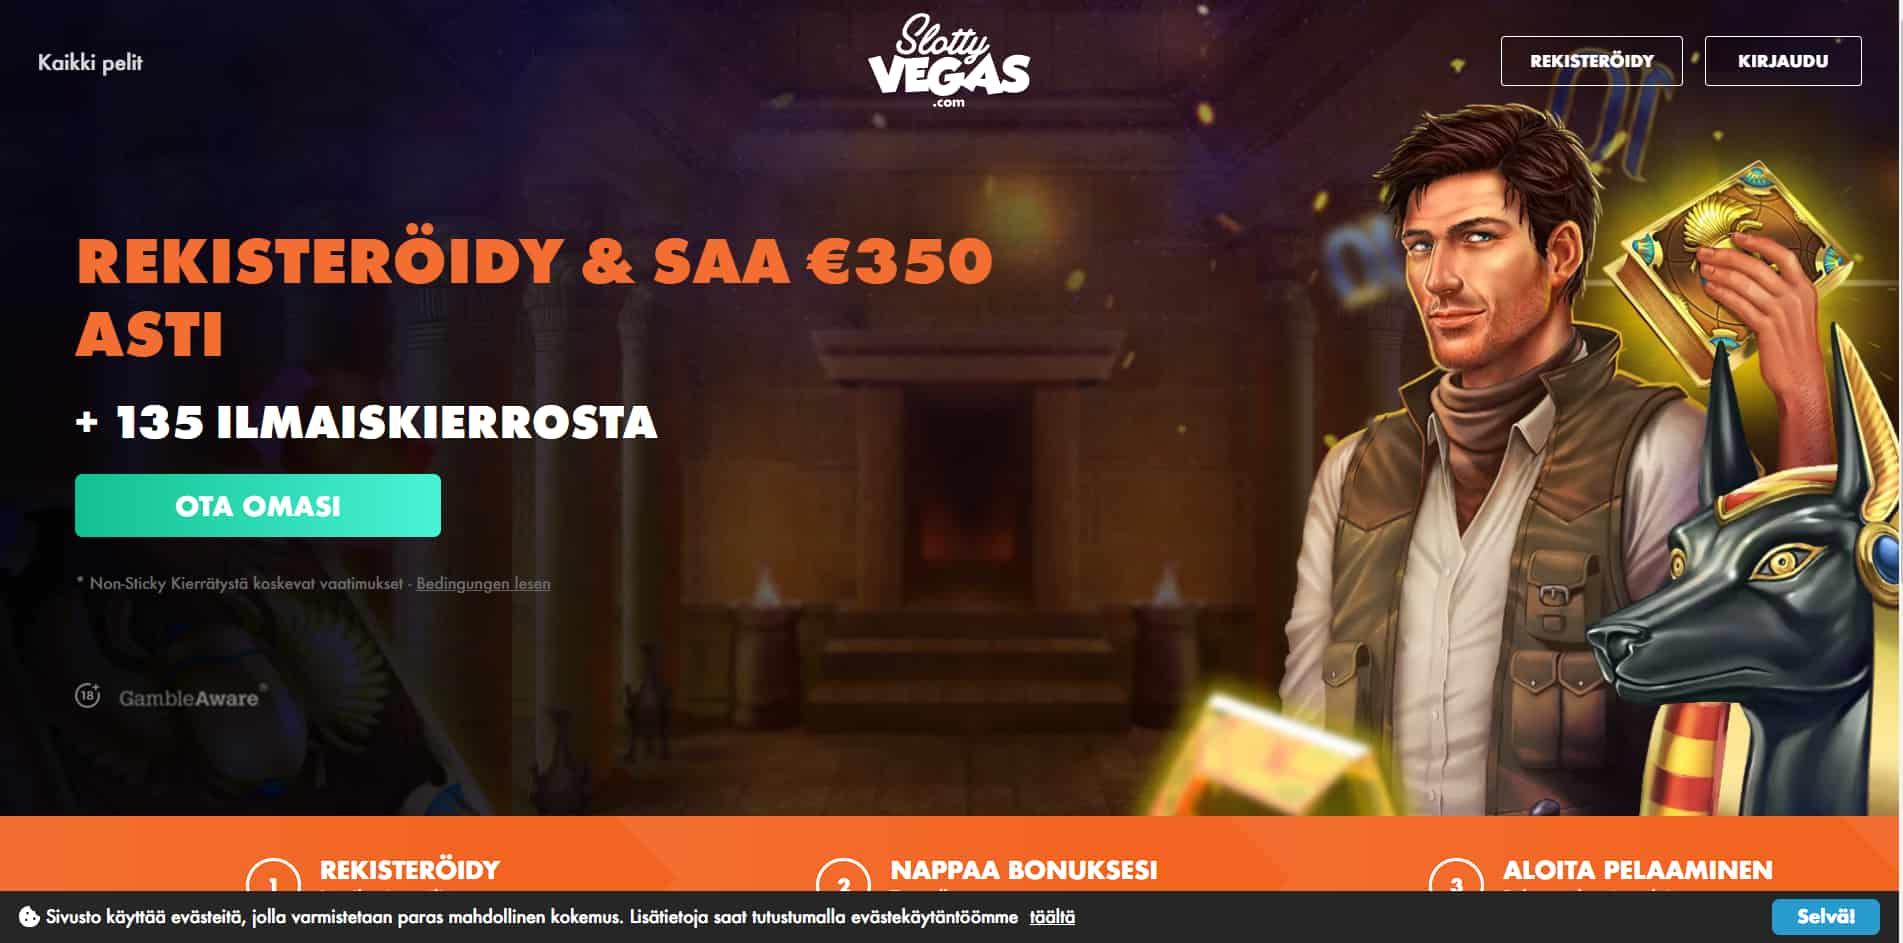 SlottyVegas casino homepage